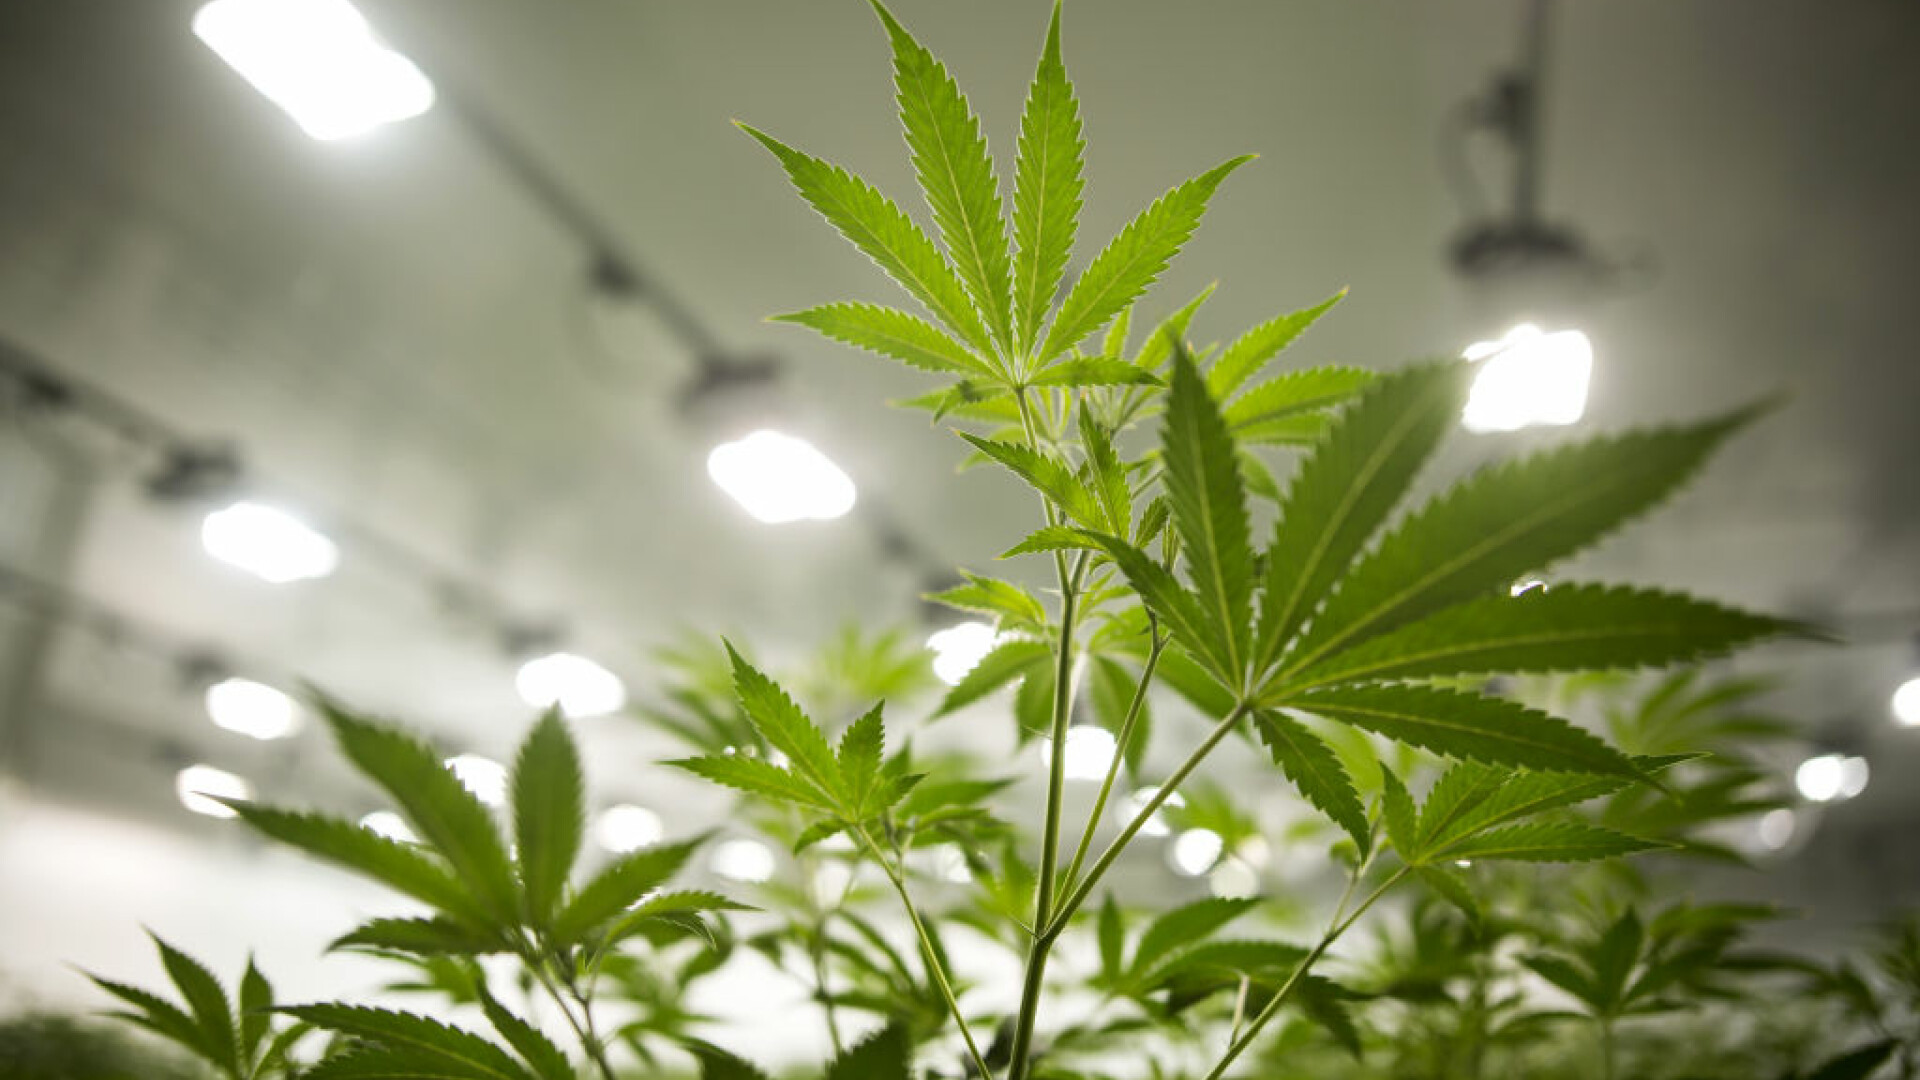 plante de marijuana intr-o cultura legala